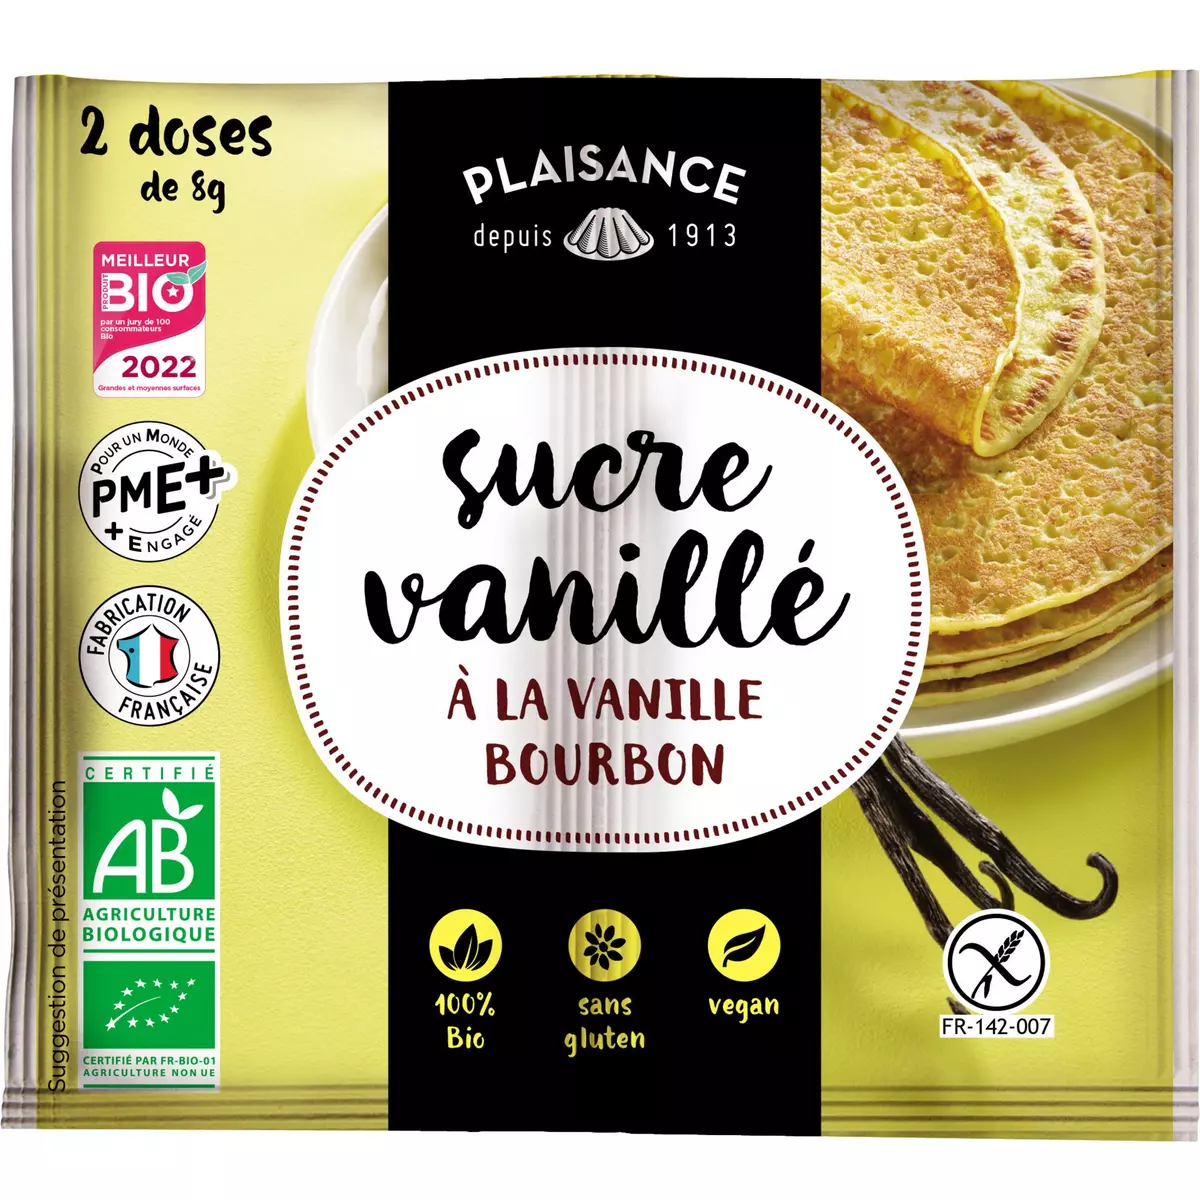 PLAISANCE BIO Sucre vanillé à la vanille bourbon 2 doses 16g